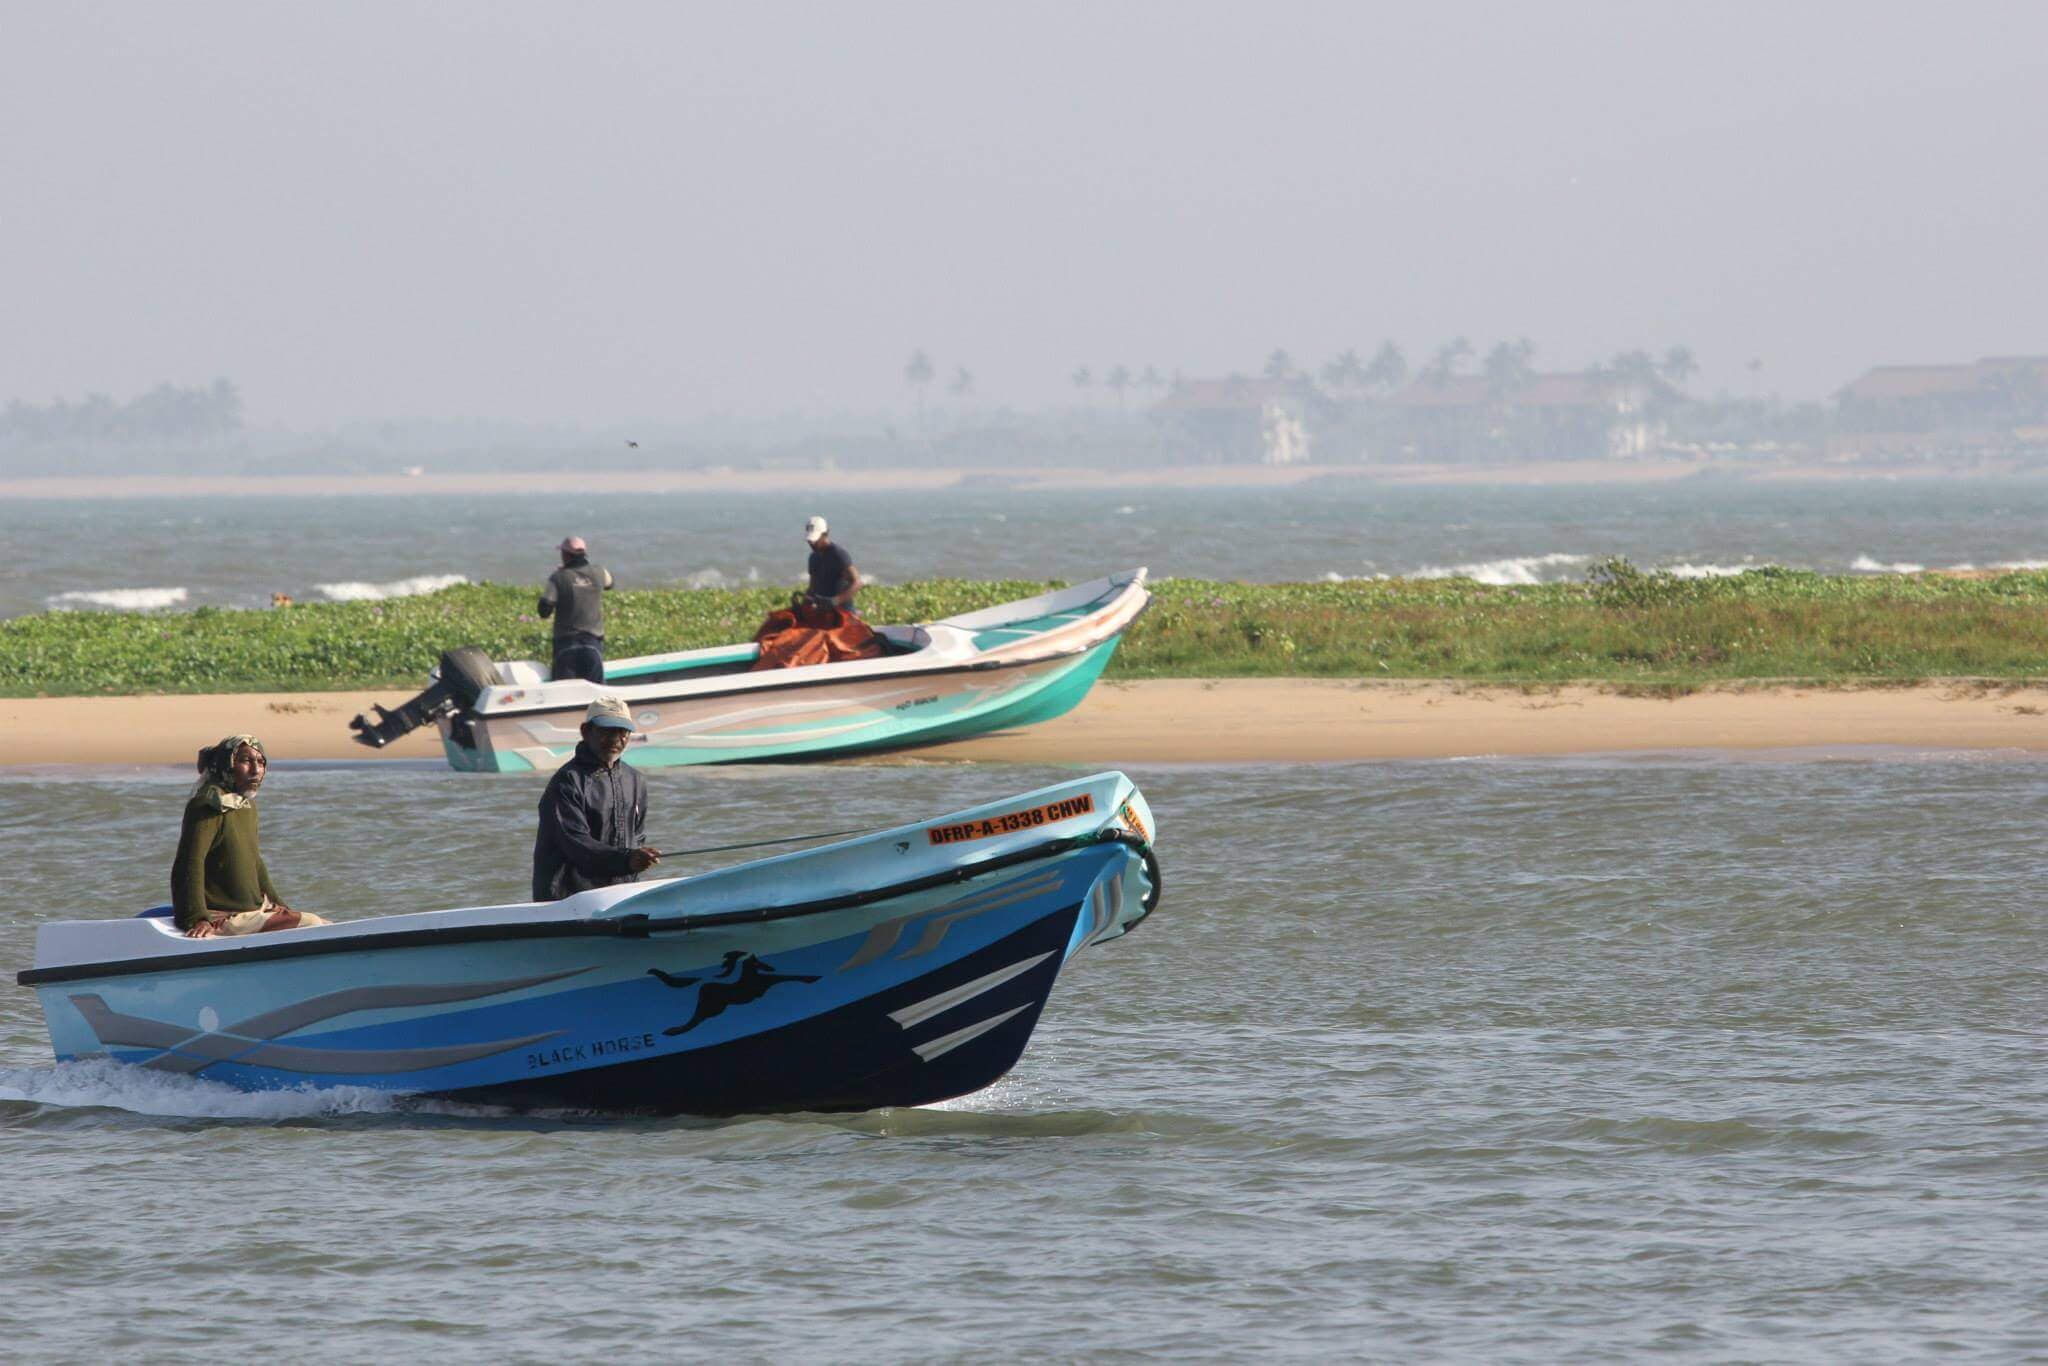 Показ пляжа Негомбо во время внутренней рыбалки в Негомбо на Шри-Ланке.